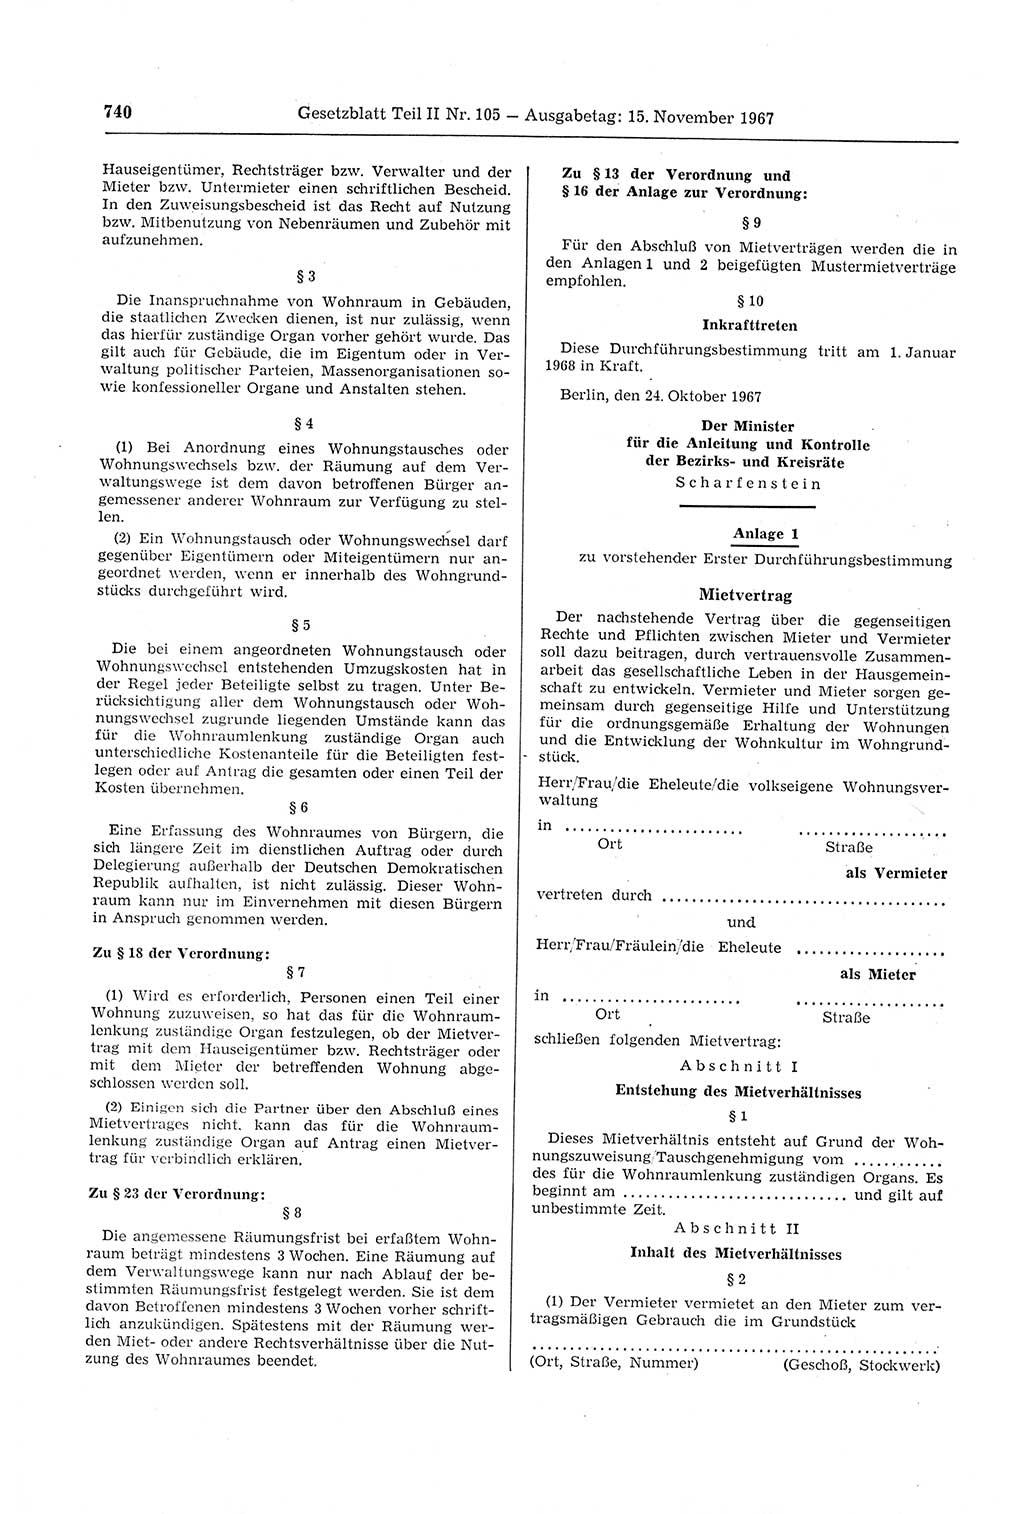 Gesetzblatt (GBl.) der Deutschen Demokratischen Republik (DDR) Teil ⅠⅠ 1967, Seite 740 (GBl. DDR ⅠⅠ 1967, S. 740)